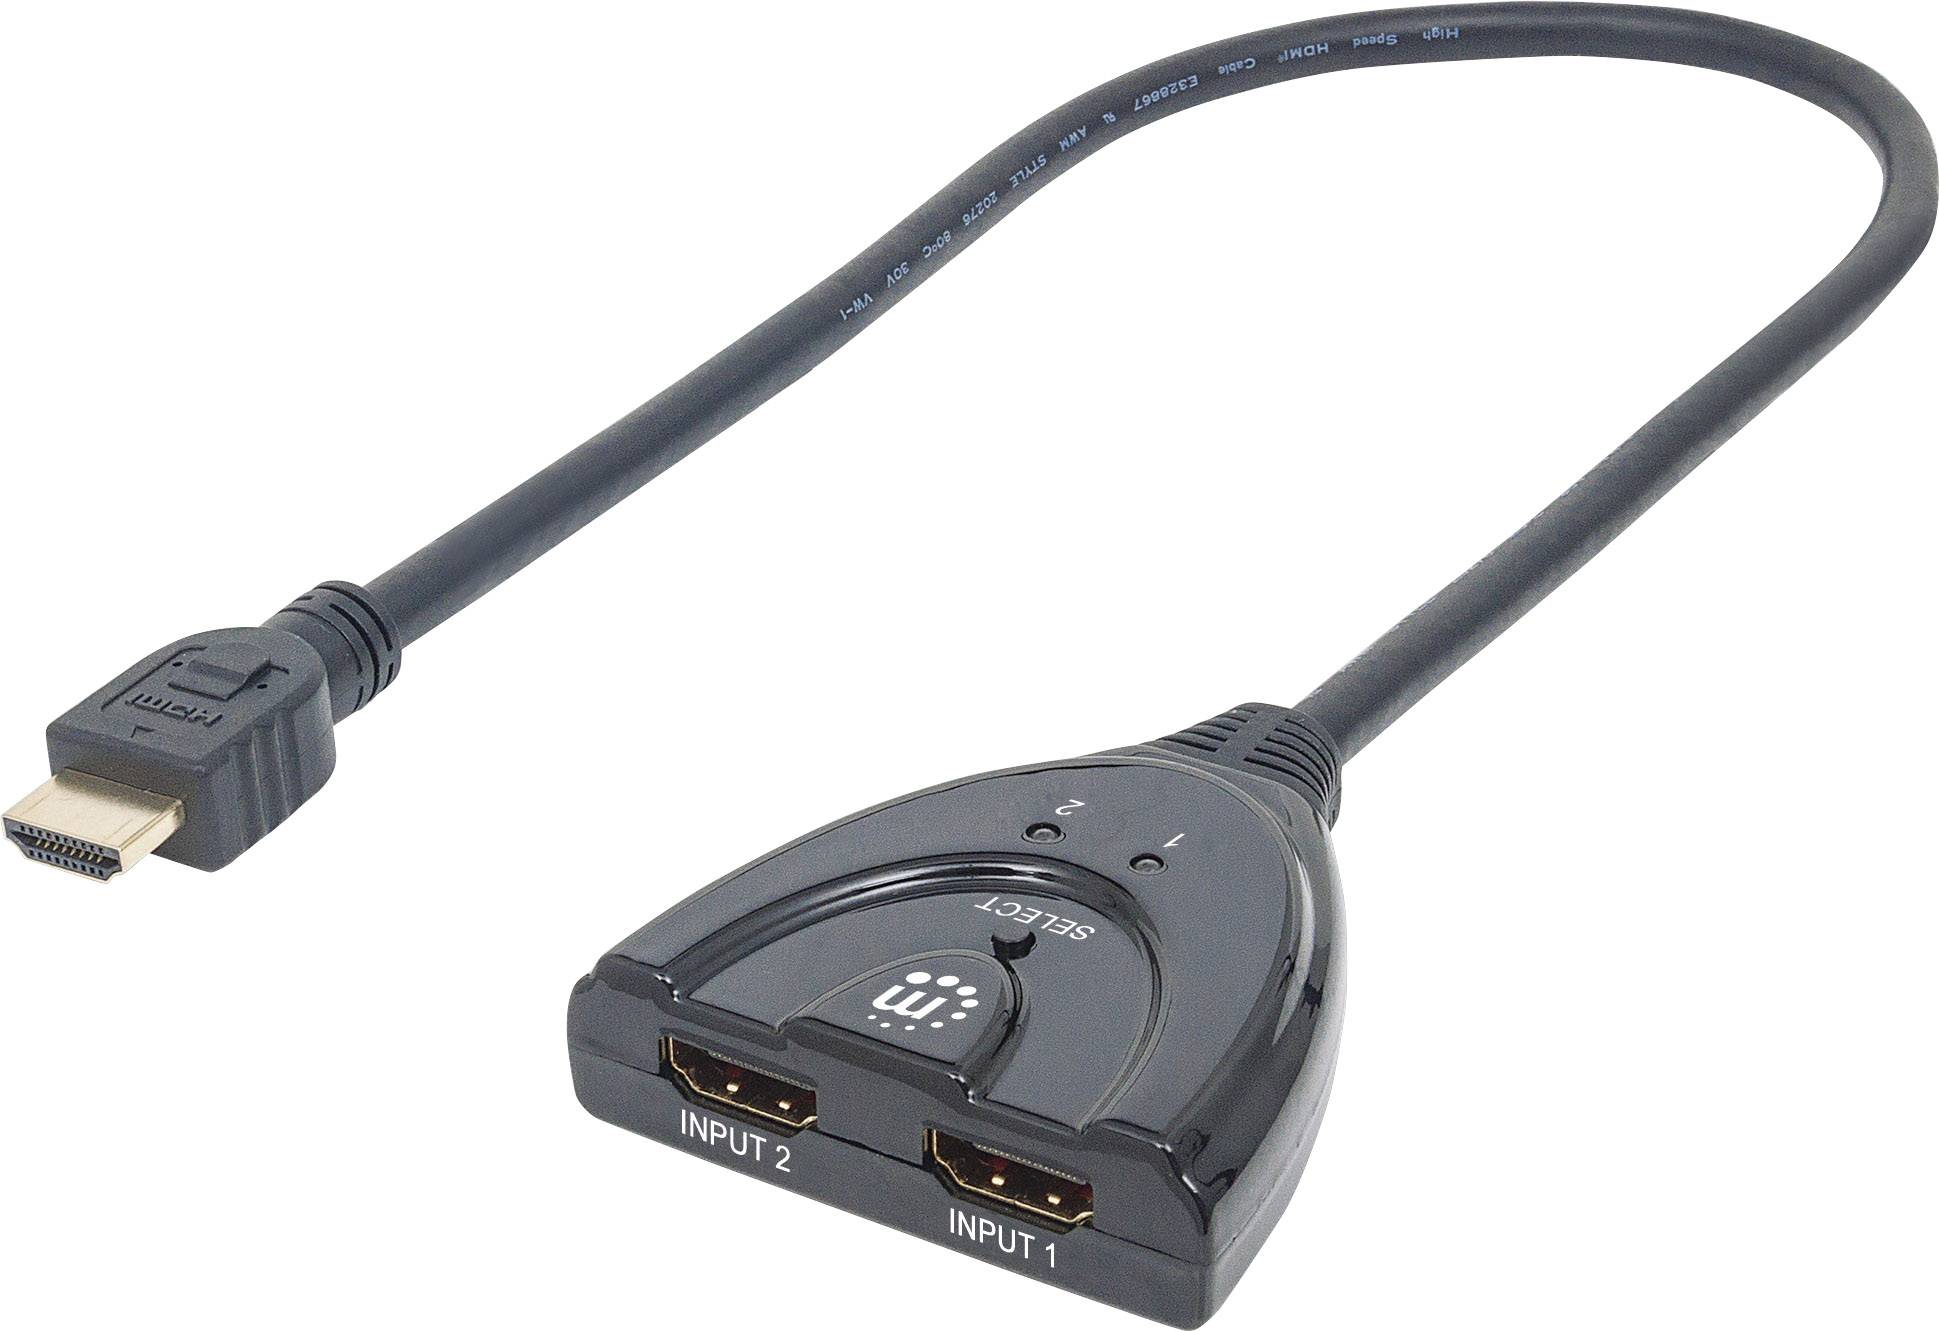 MANHATTAN HDMI-Switch HDMI 1.3b 2 Ports integriertes Kabel Unterstuetzt 1080p-Aufloesung 3D Deep Col